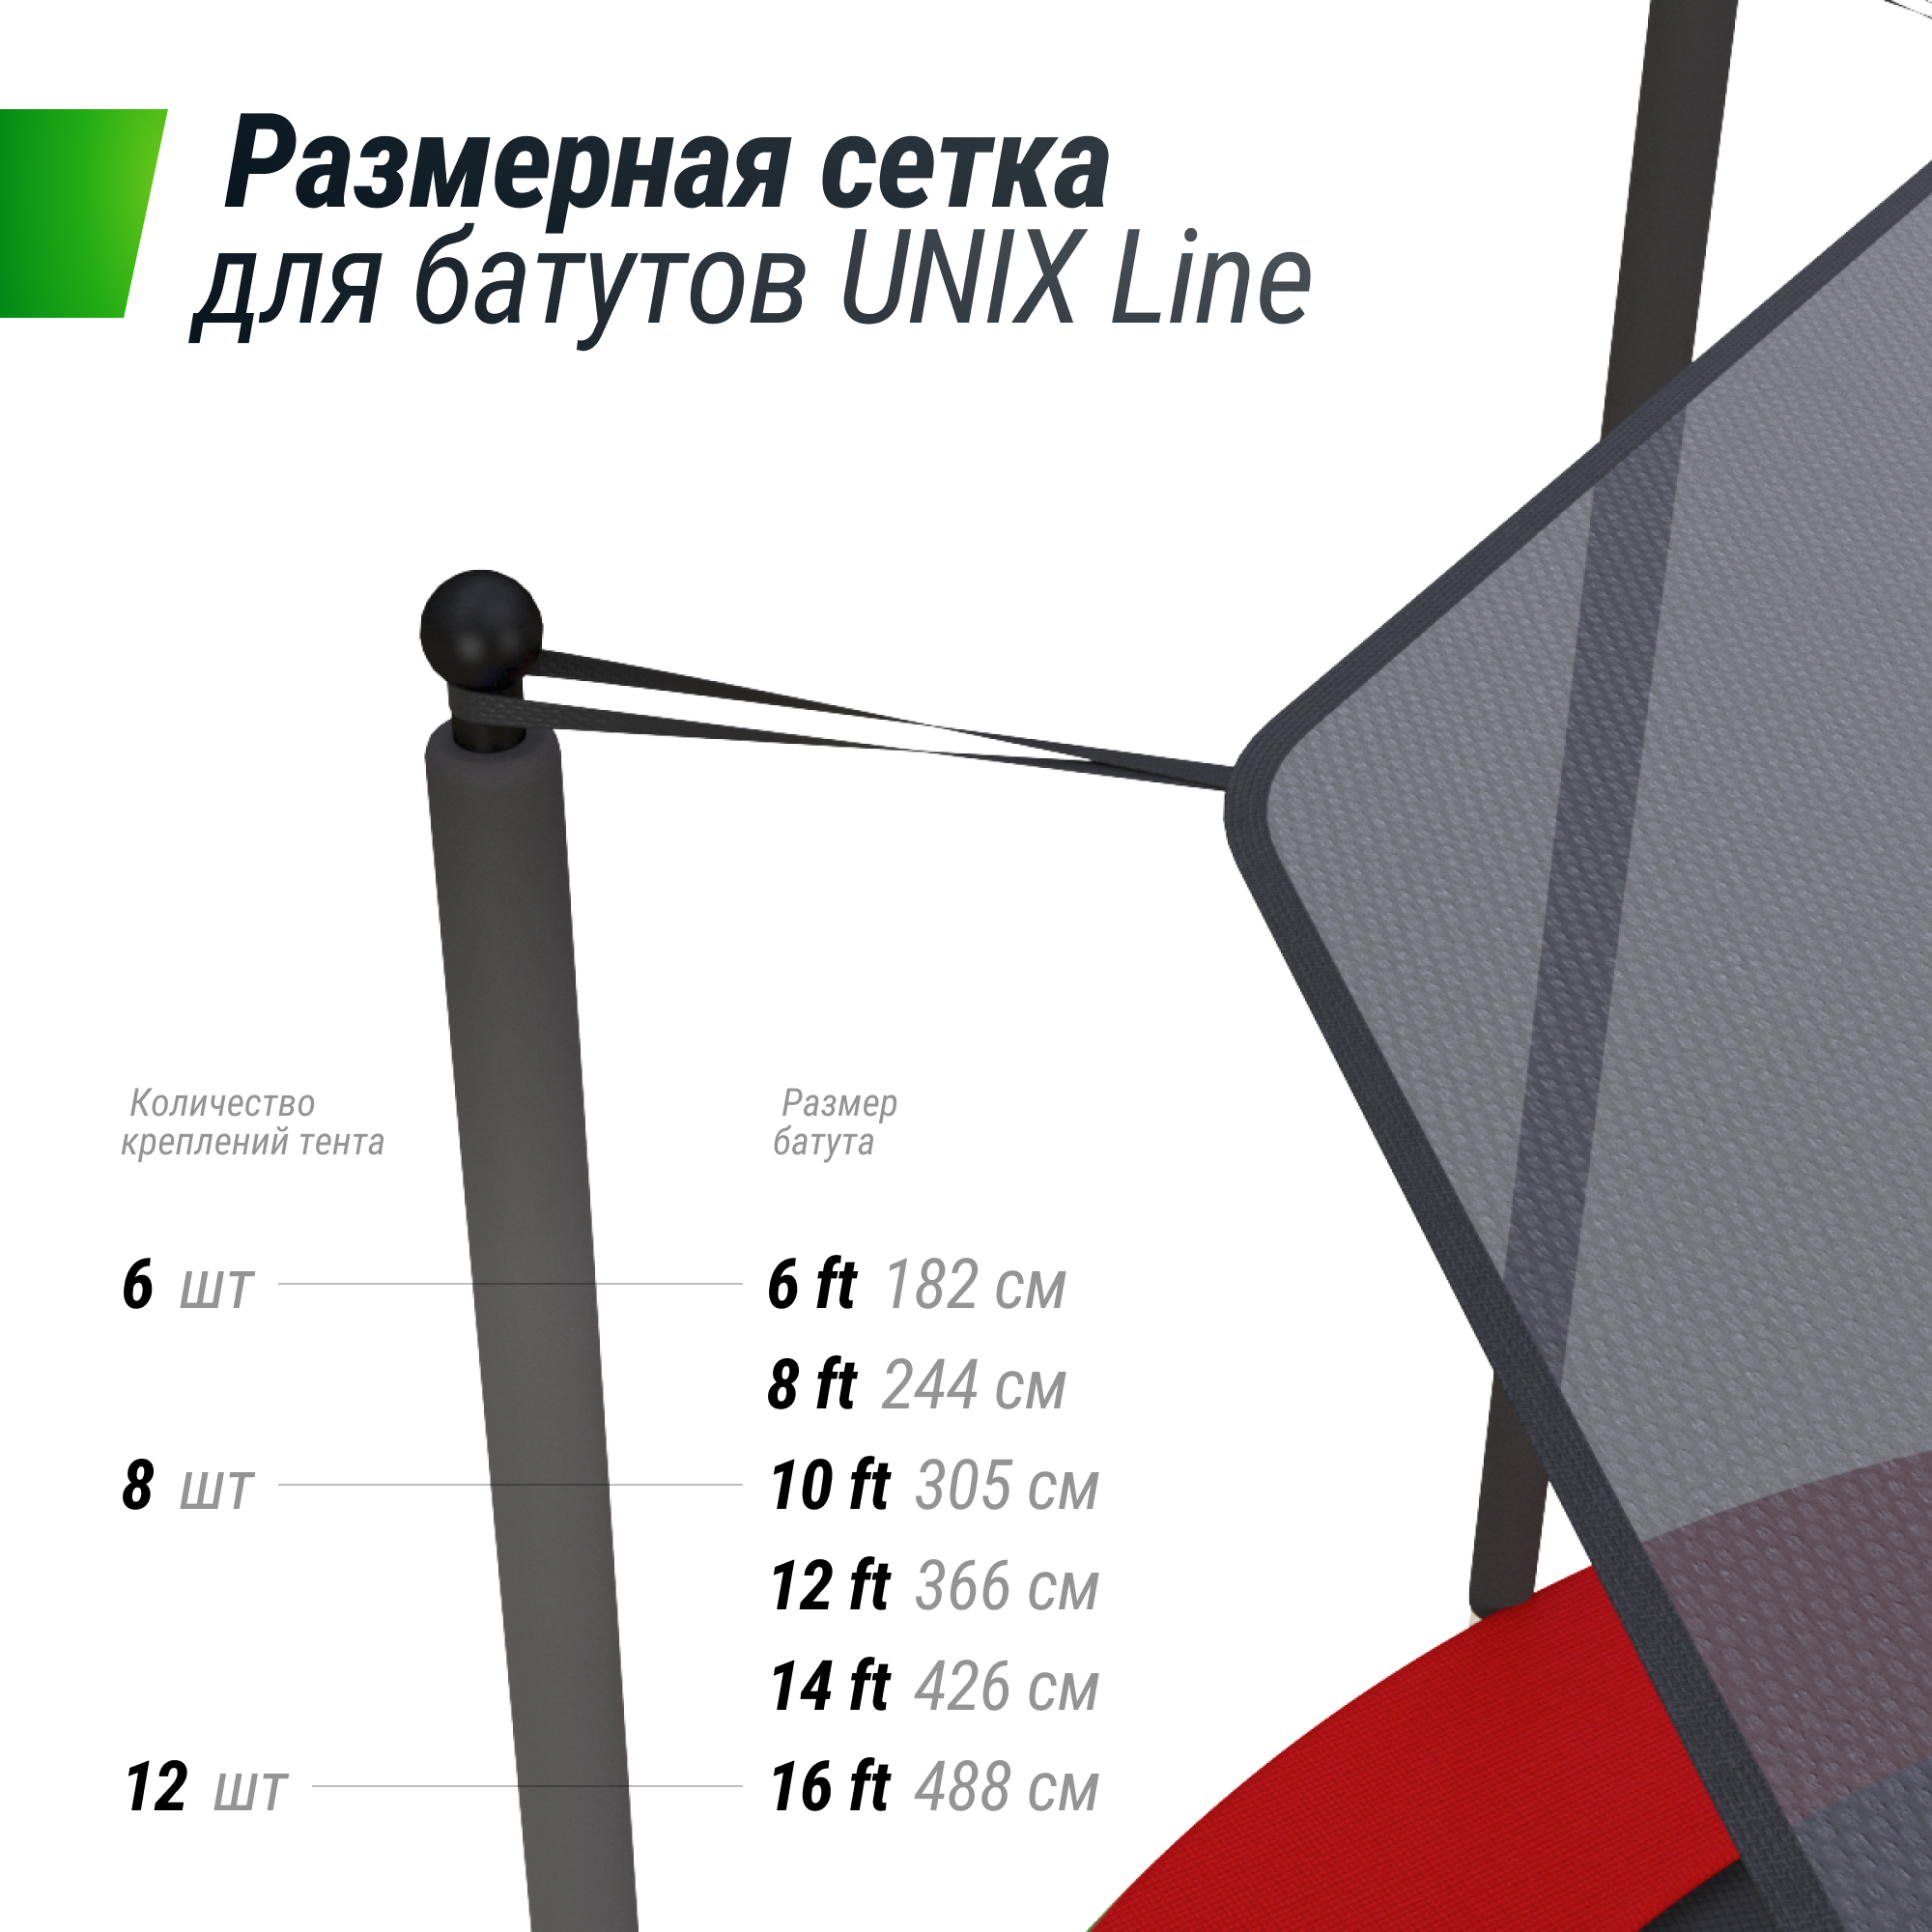 Солнцезащитный тент UNIX Line 182 см (6 ft) - 5 